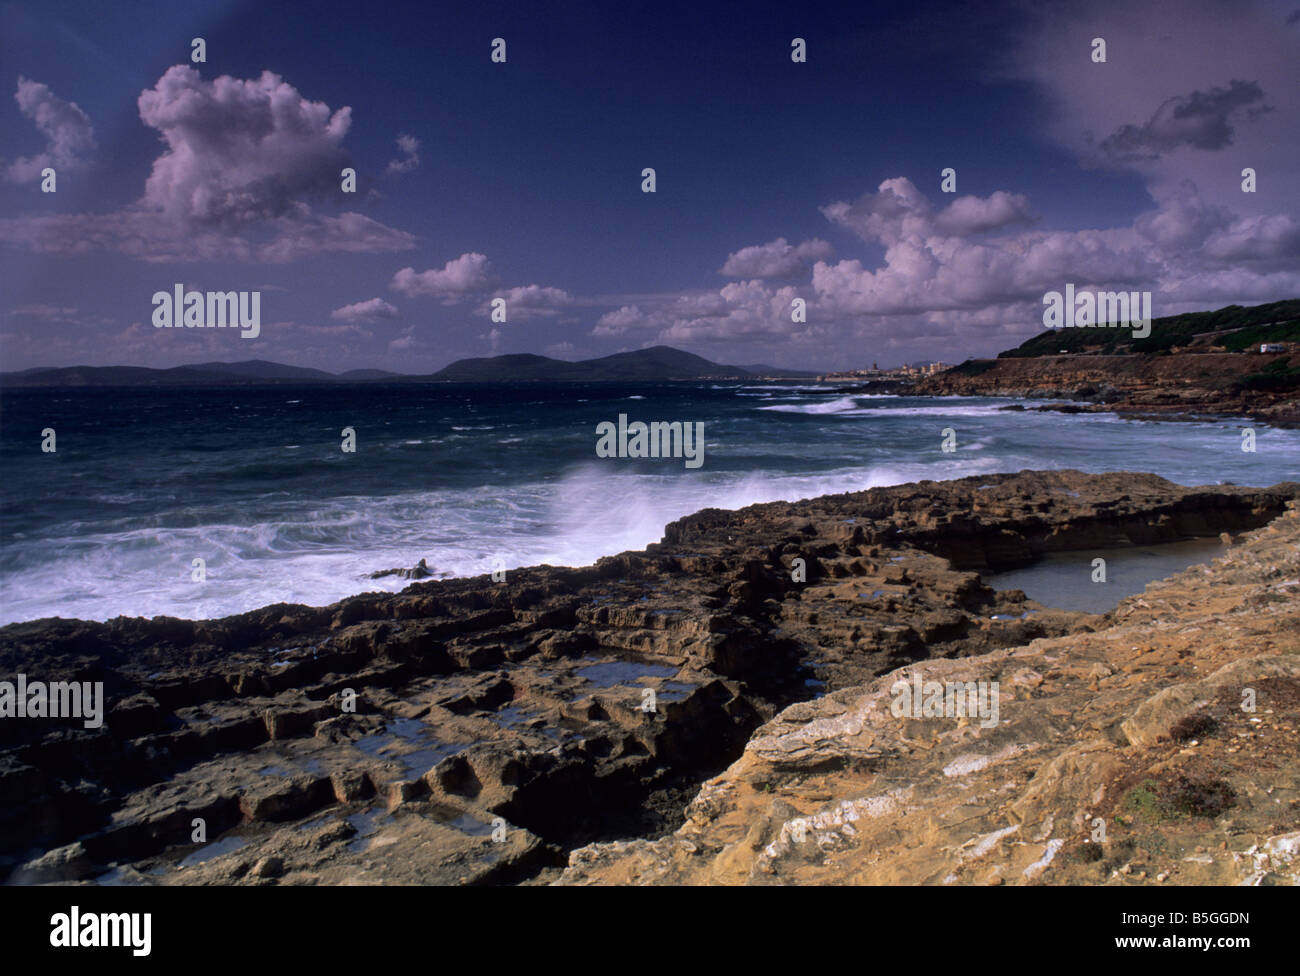 Alghero south coast, Sardinia, Italy Stock Photo